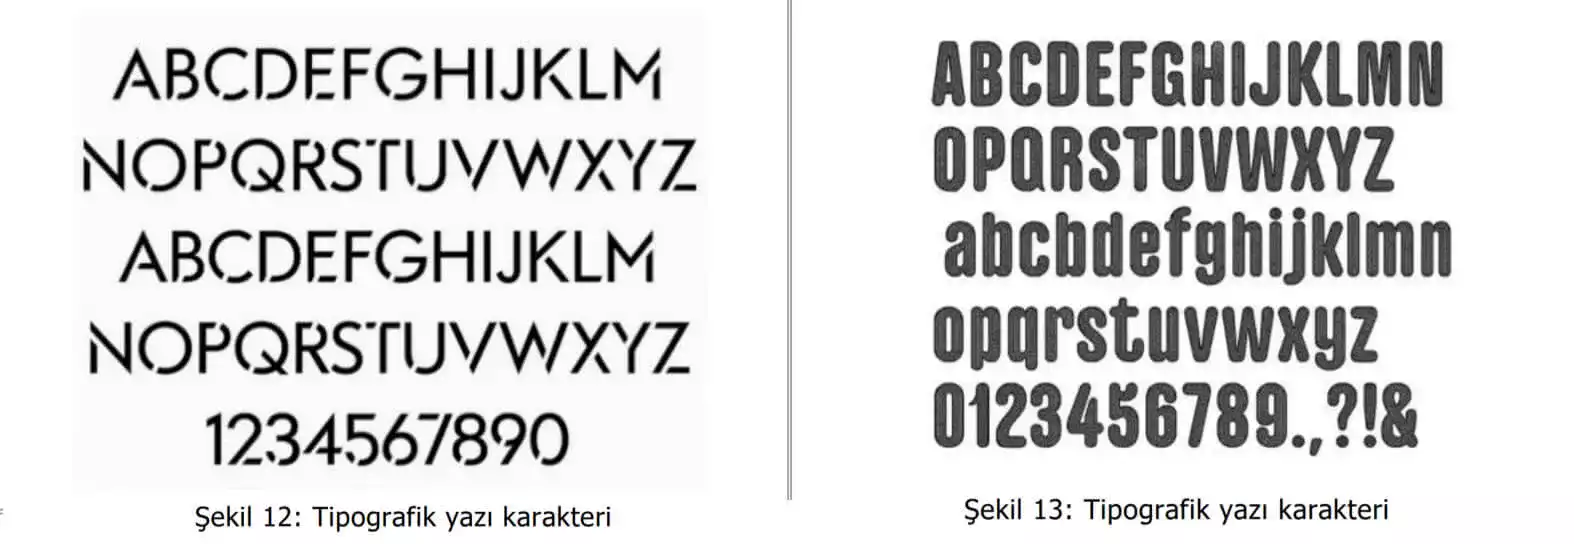 tipografik yazı karakter örnekleri-bursa marka tescil